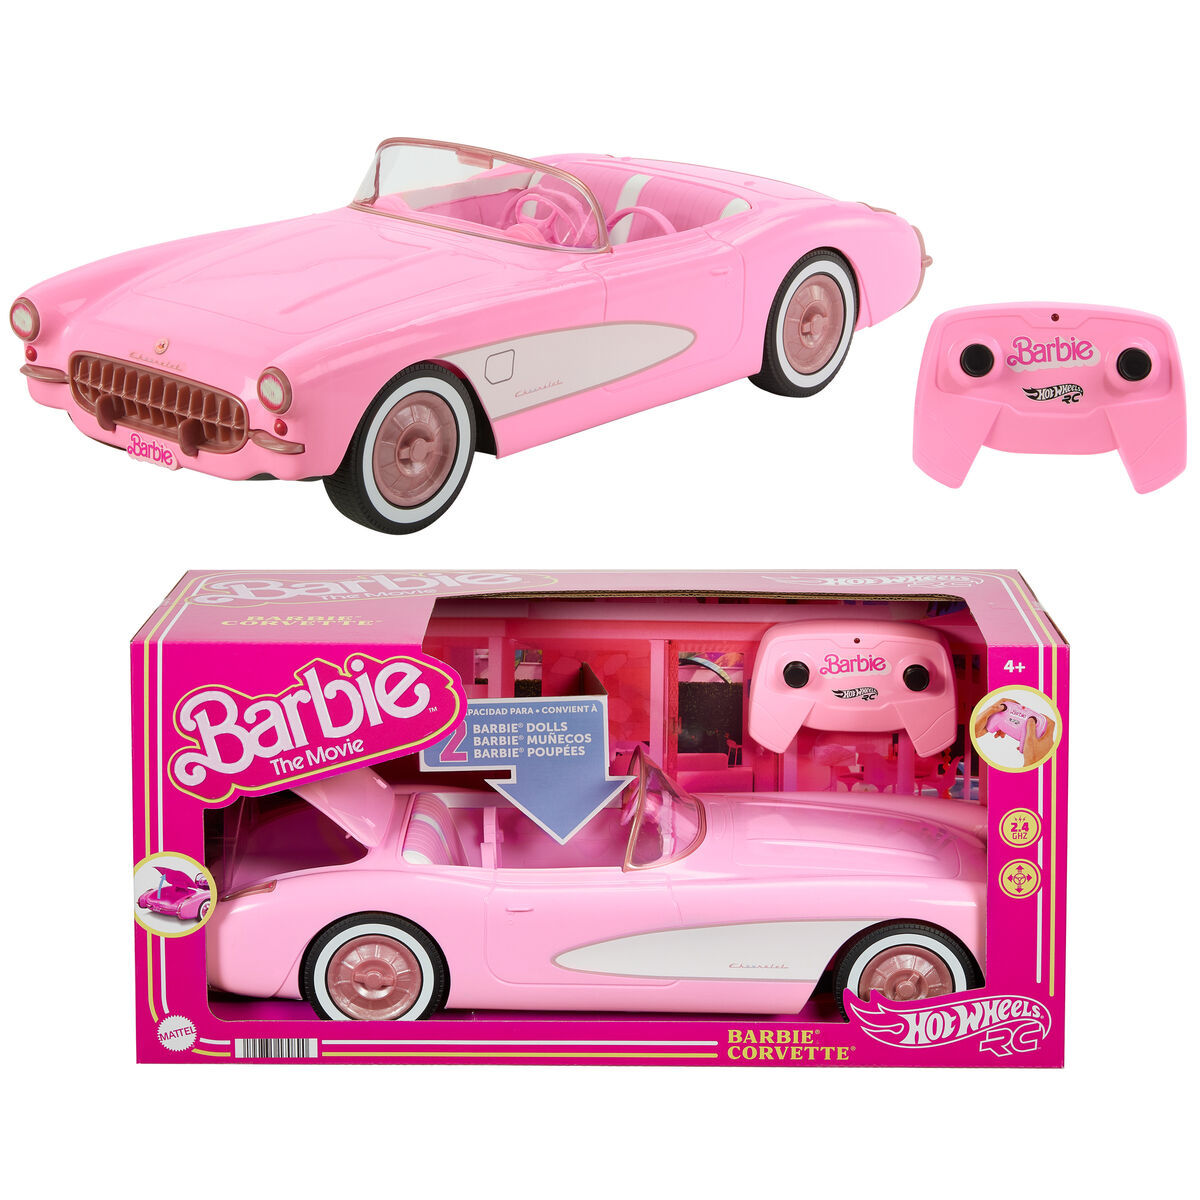 Veicolo Barbie The Movie Hot Wheels RC Corvette - Disponibile in 3-4 giorni lavorativi